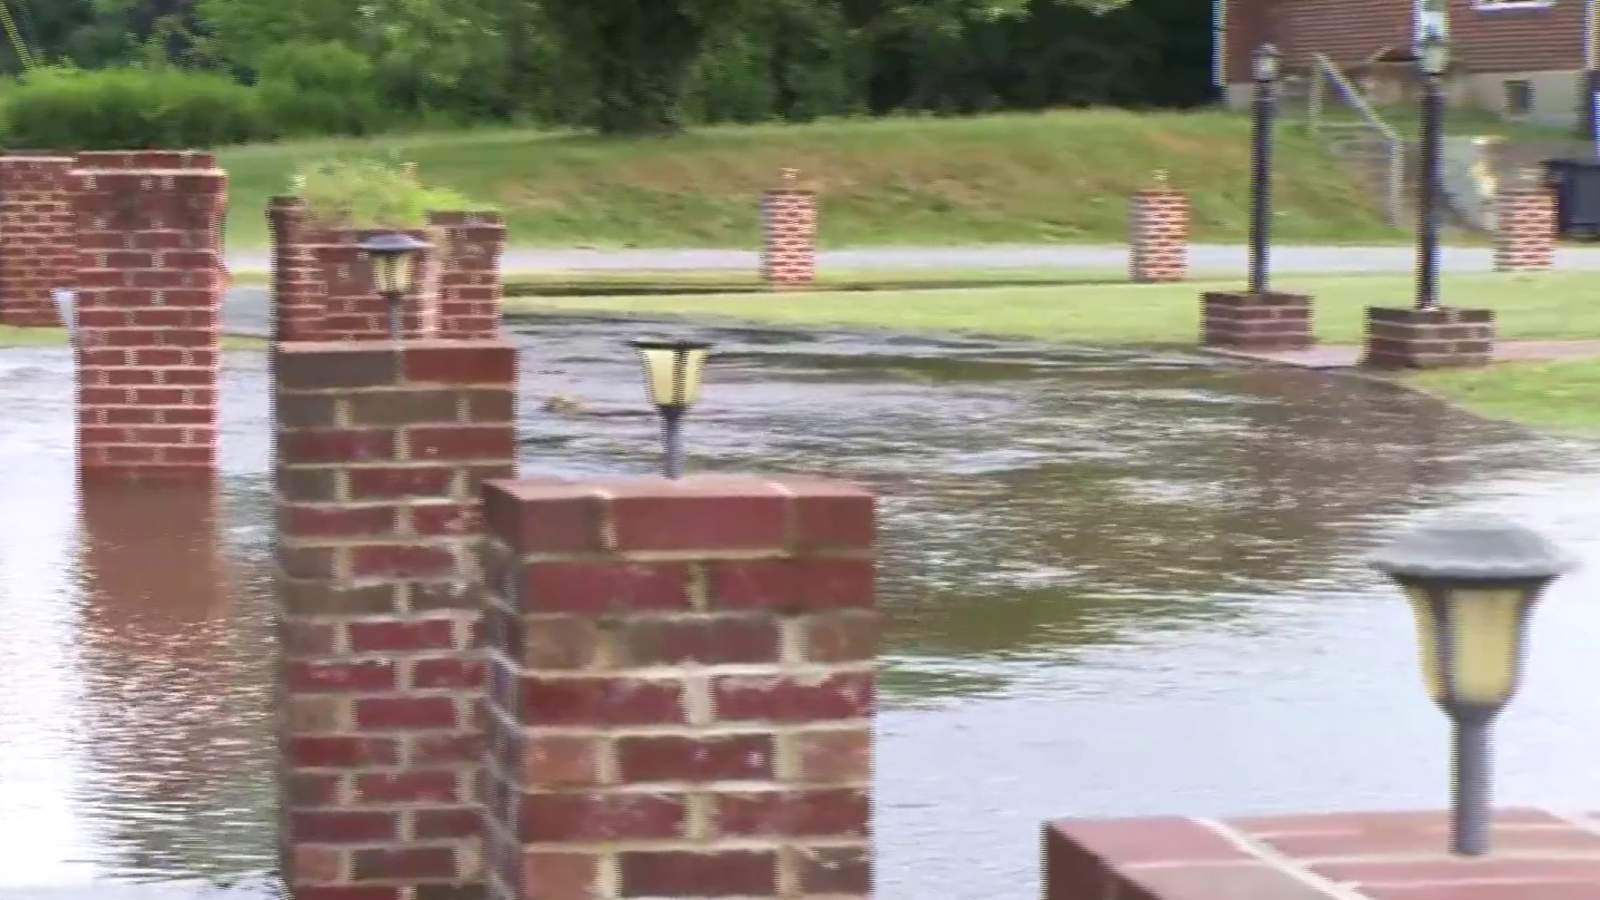 Crews on scene of water main break in Roanoke